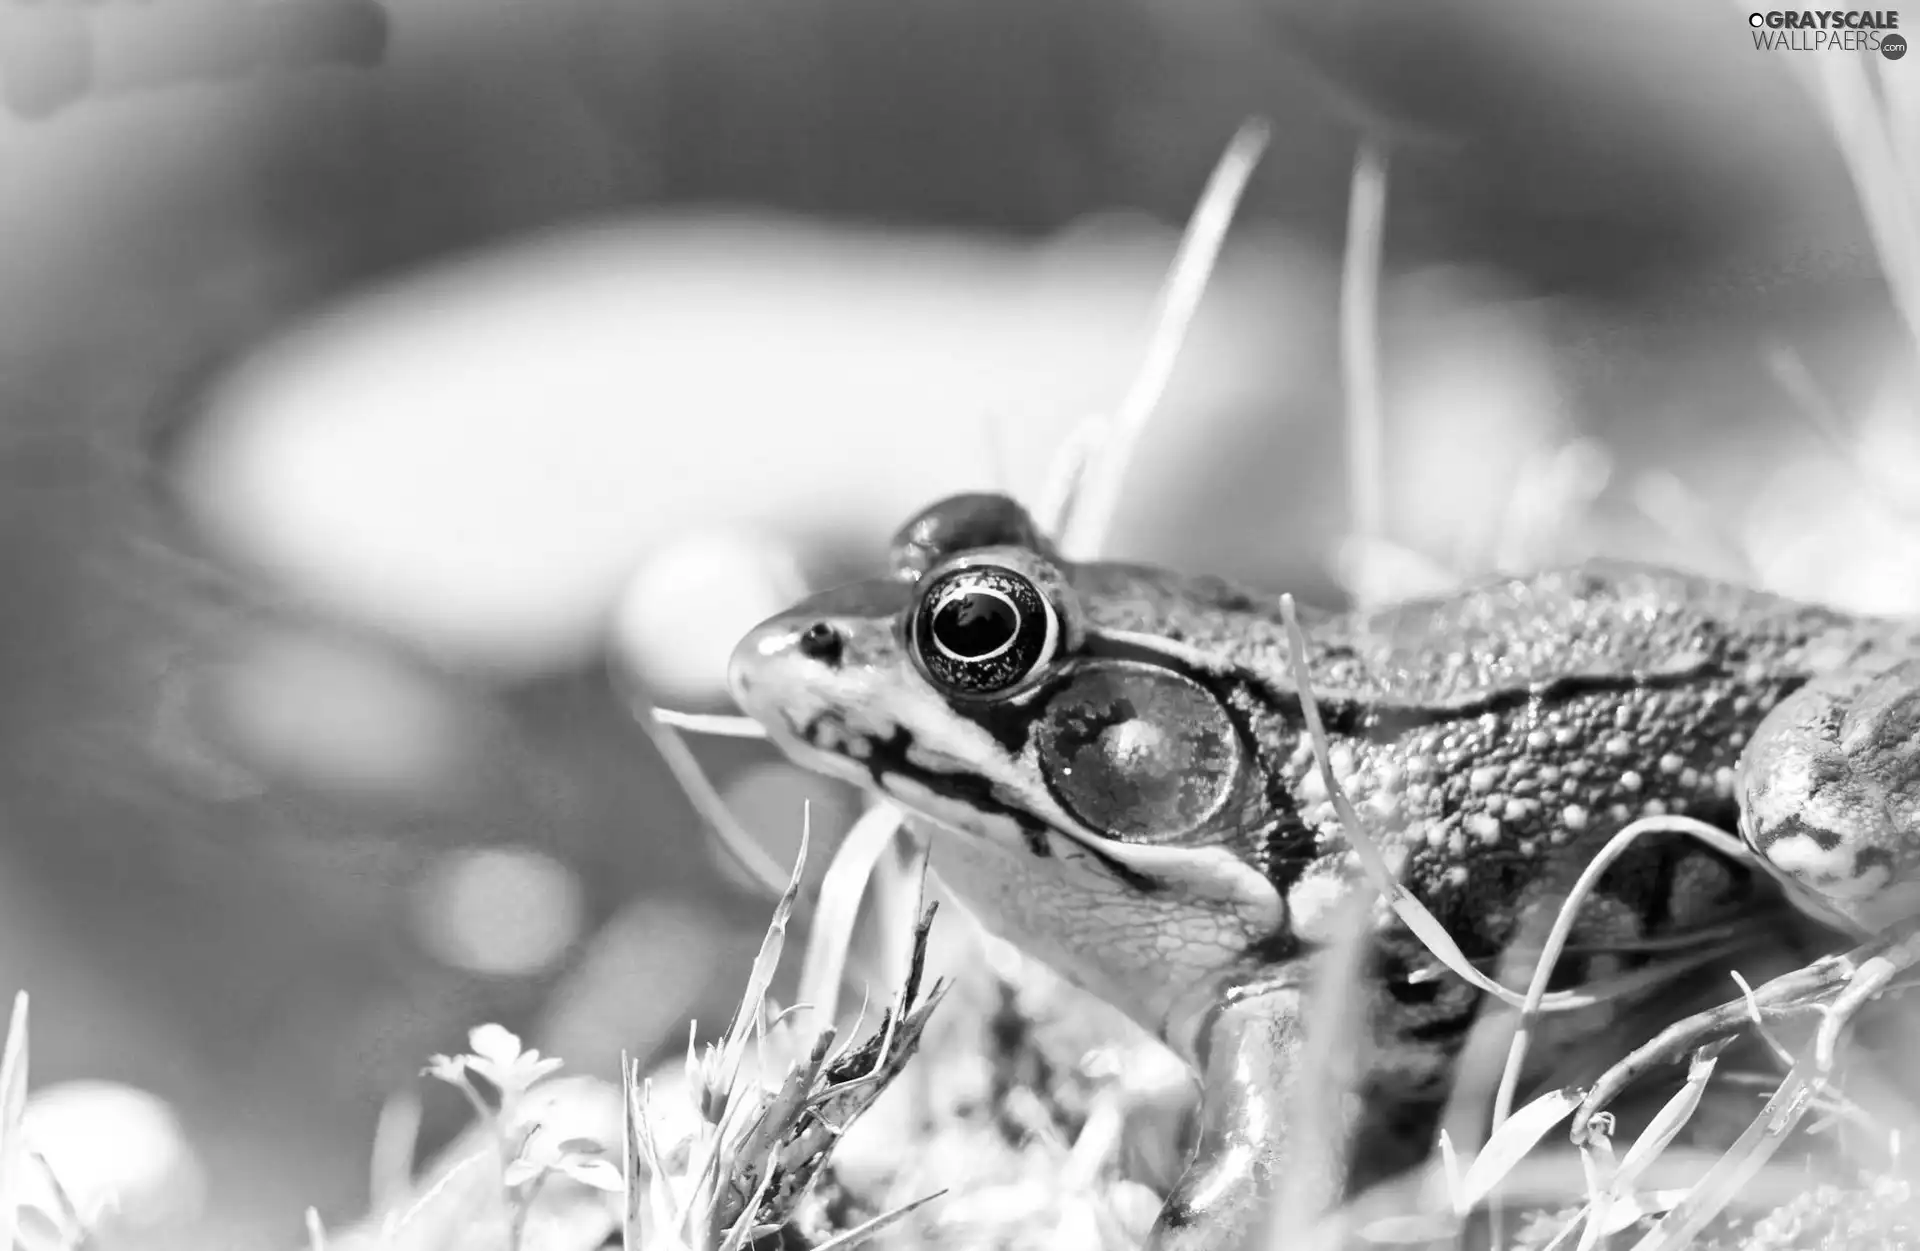 strange frog, grass